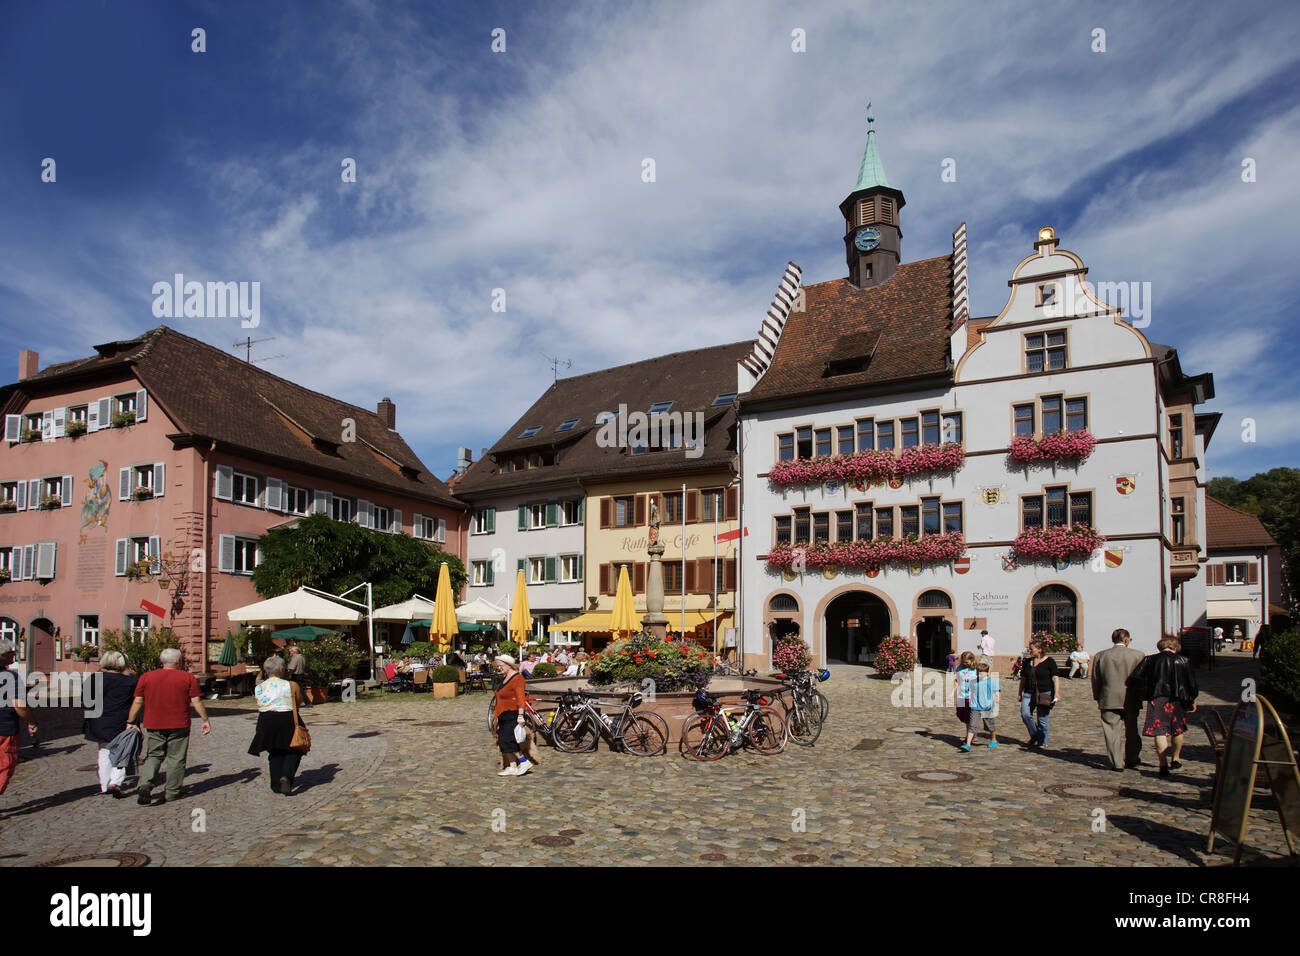 Historic town hall, built in 1546, Marktplatz square in Staufen im Breisgau, southern Black Forest, Baden-Wuerttemberg Stock Photo